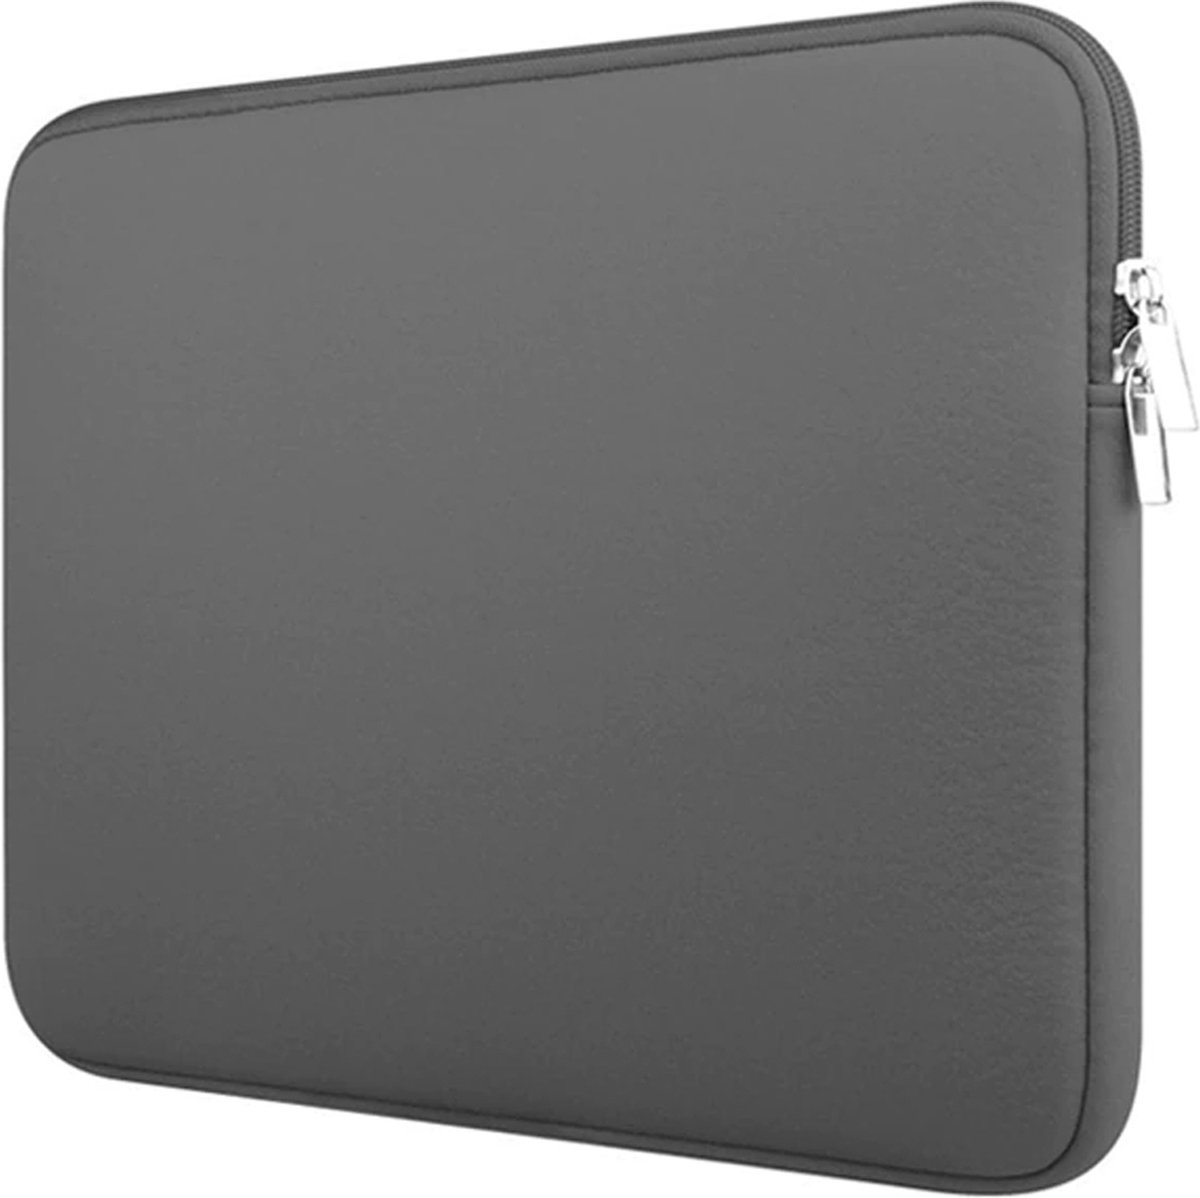 Laptophoes - Laptop sleeve 14 inch - Laptoptas geschikt voor Macbook, Laptop en Chromebook - Grijs - Case2go